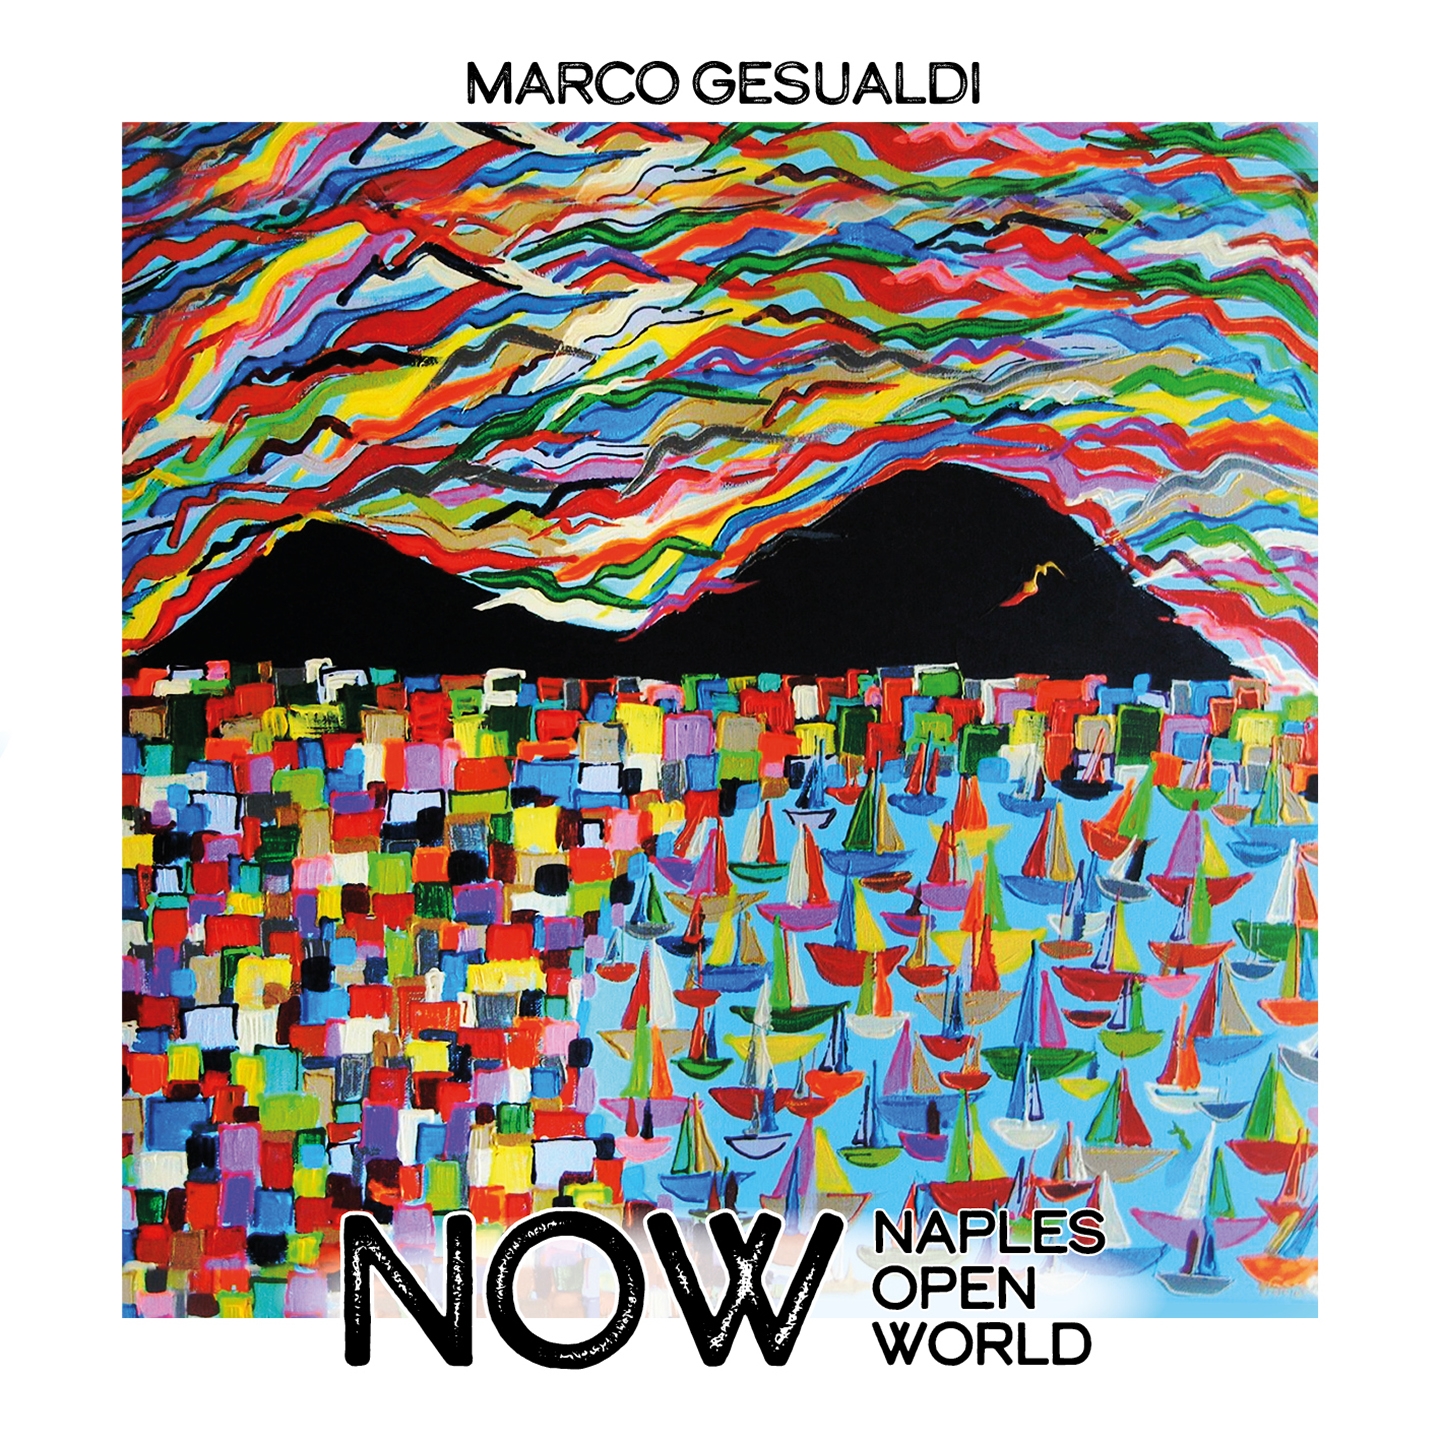 Now (Naples Open World)